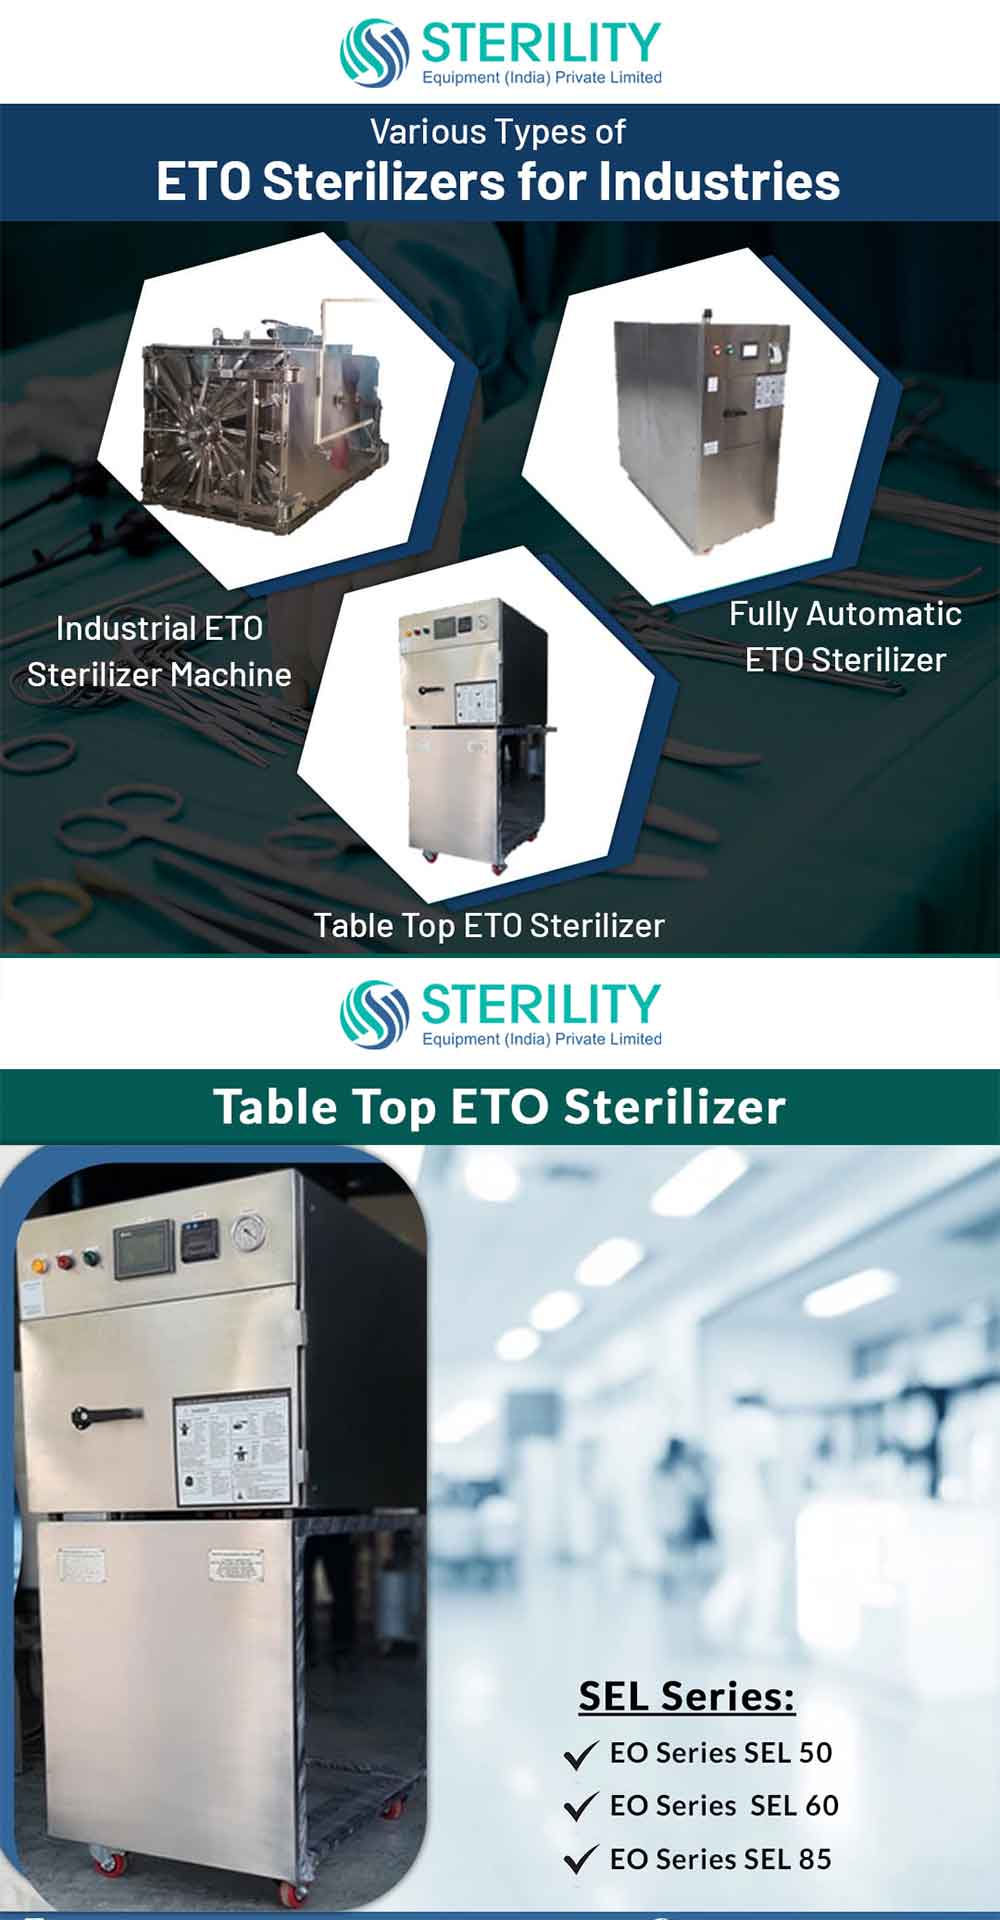 ETO or Ethylene Oxide Sterilizer 